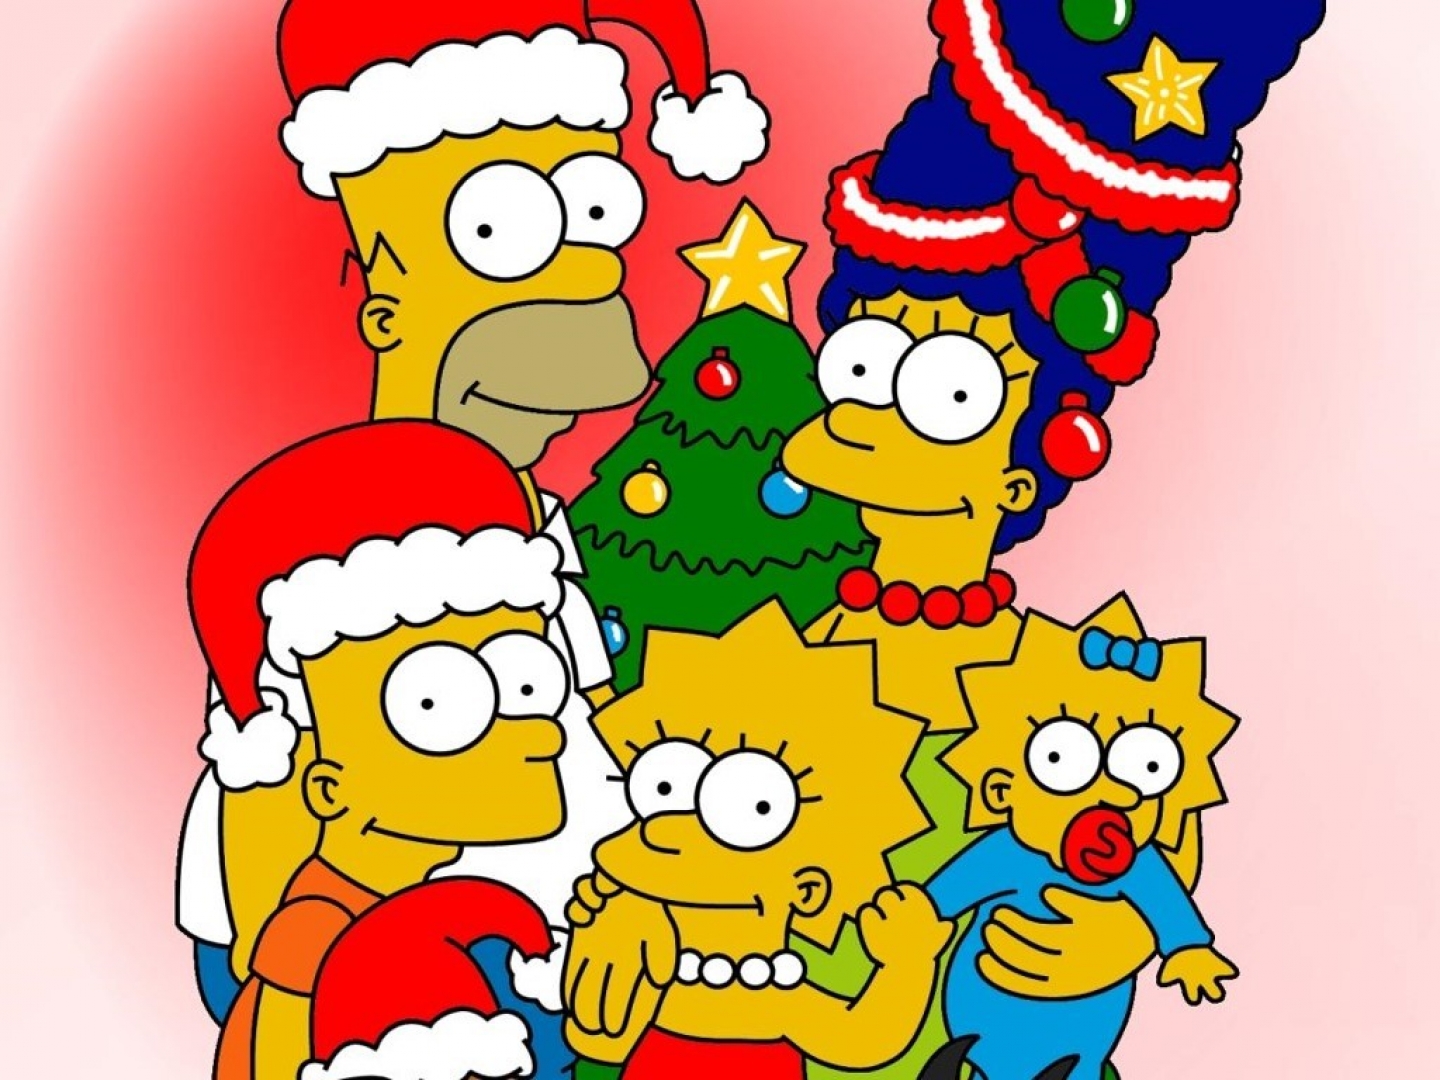 Bart Simpson Homer Simpson Lisa Simpson Maggie Simpson Marge Simpson The Simpsons 1440x1080